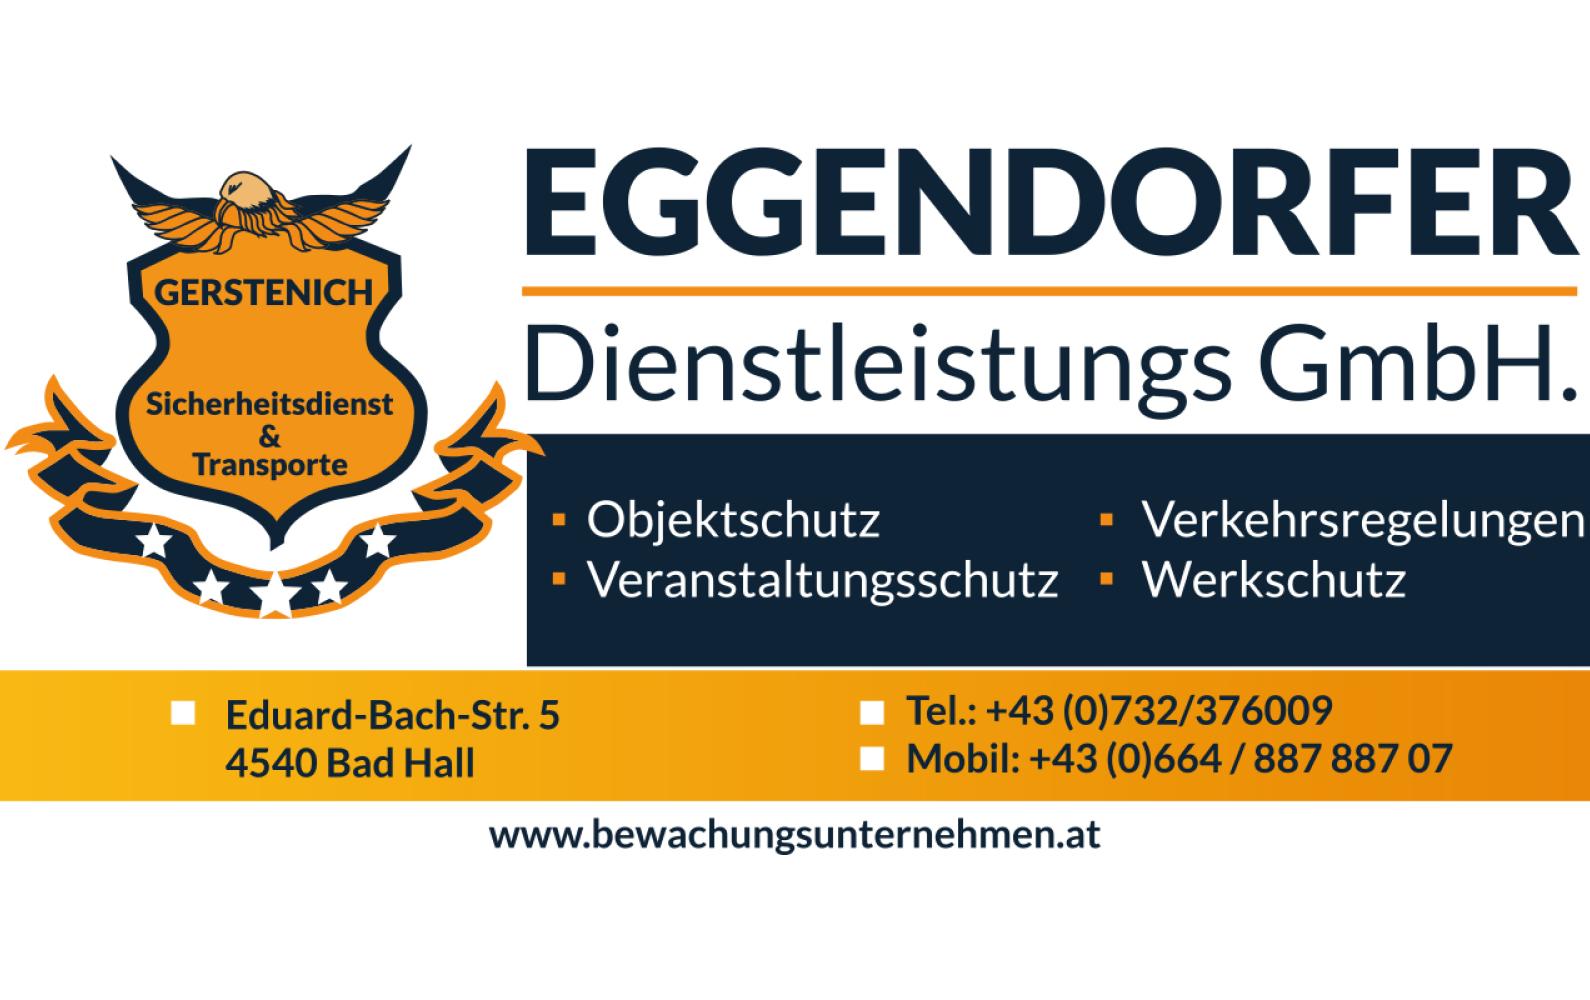 Eggendorfer Dienstleistungs GmbH Headerbild